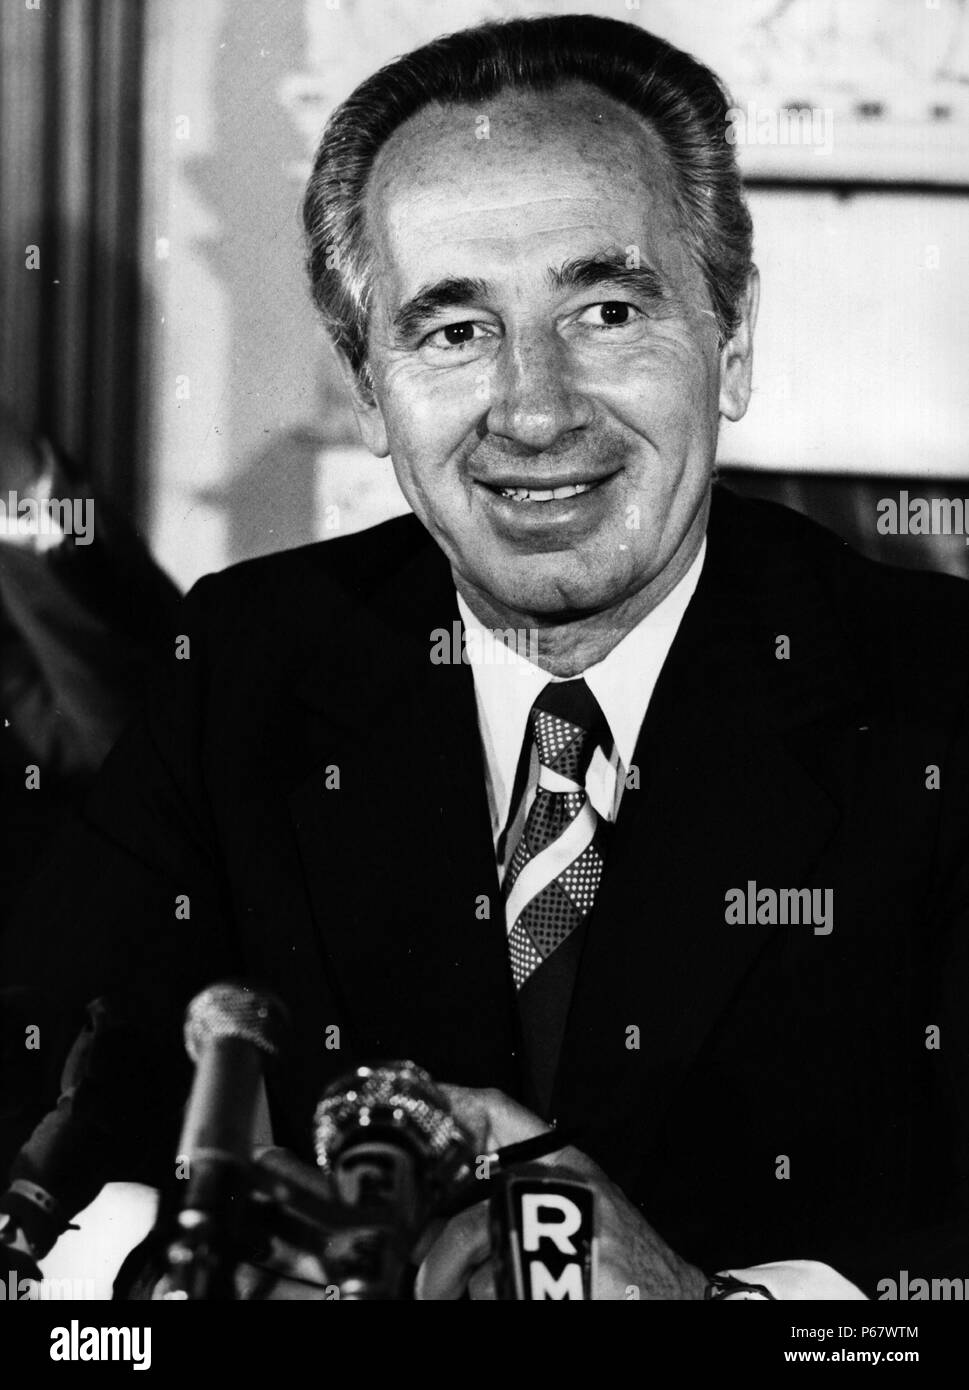 Shimon Peres Août 1923-présent. L'homme d'origine polonaise. Président de l'état d'Israël 2007-2014. Peres a servi deux fois comme premier ministre d'Israël Banque D'Images